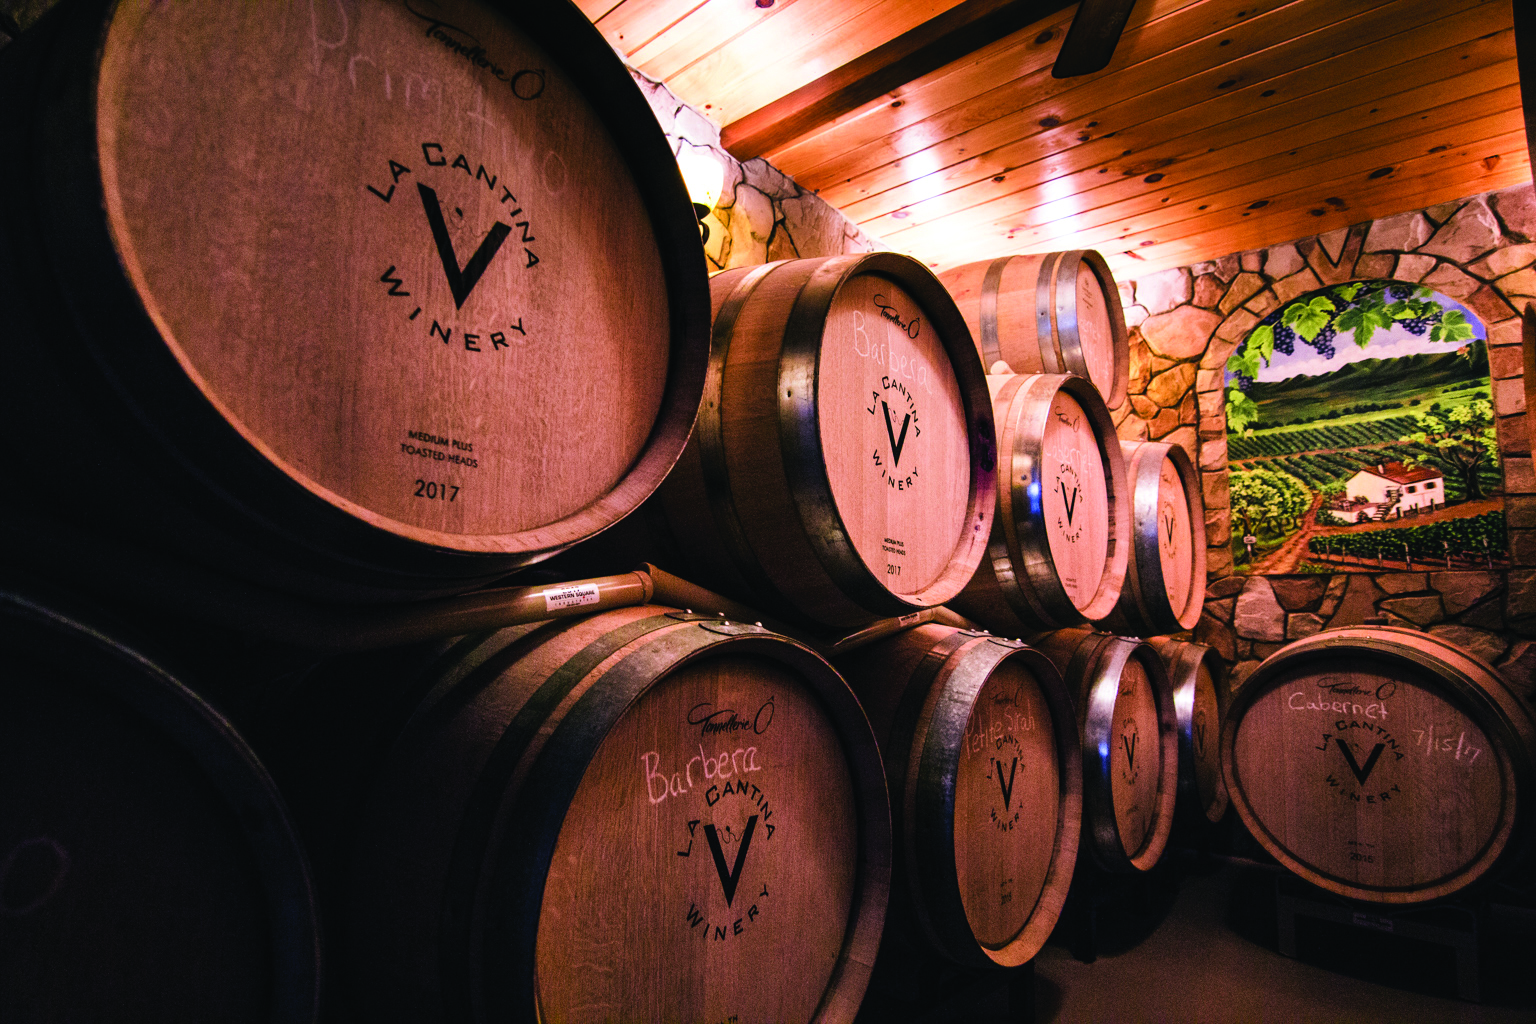 La Cantina winery barrels